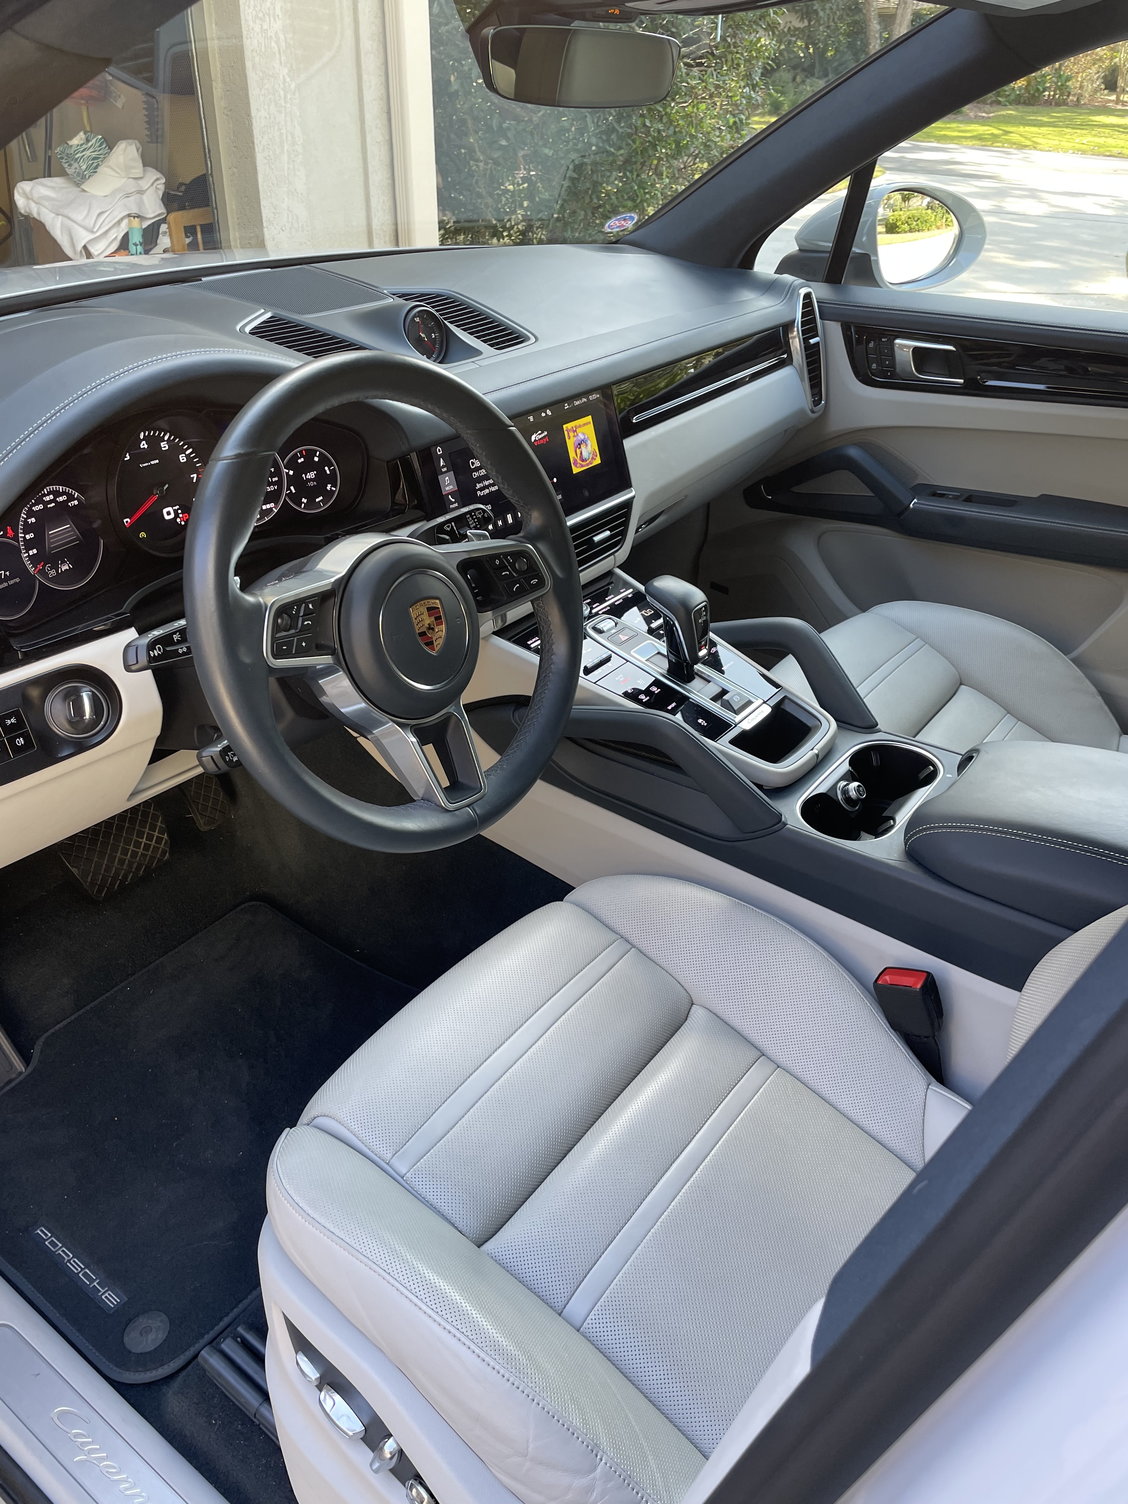 interior cleaner recommendation - Rennlist - Porsche Discussion Forums